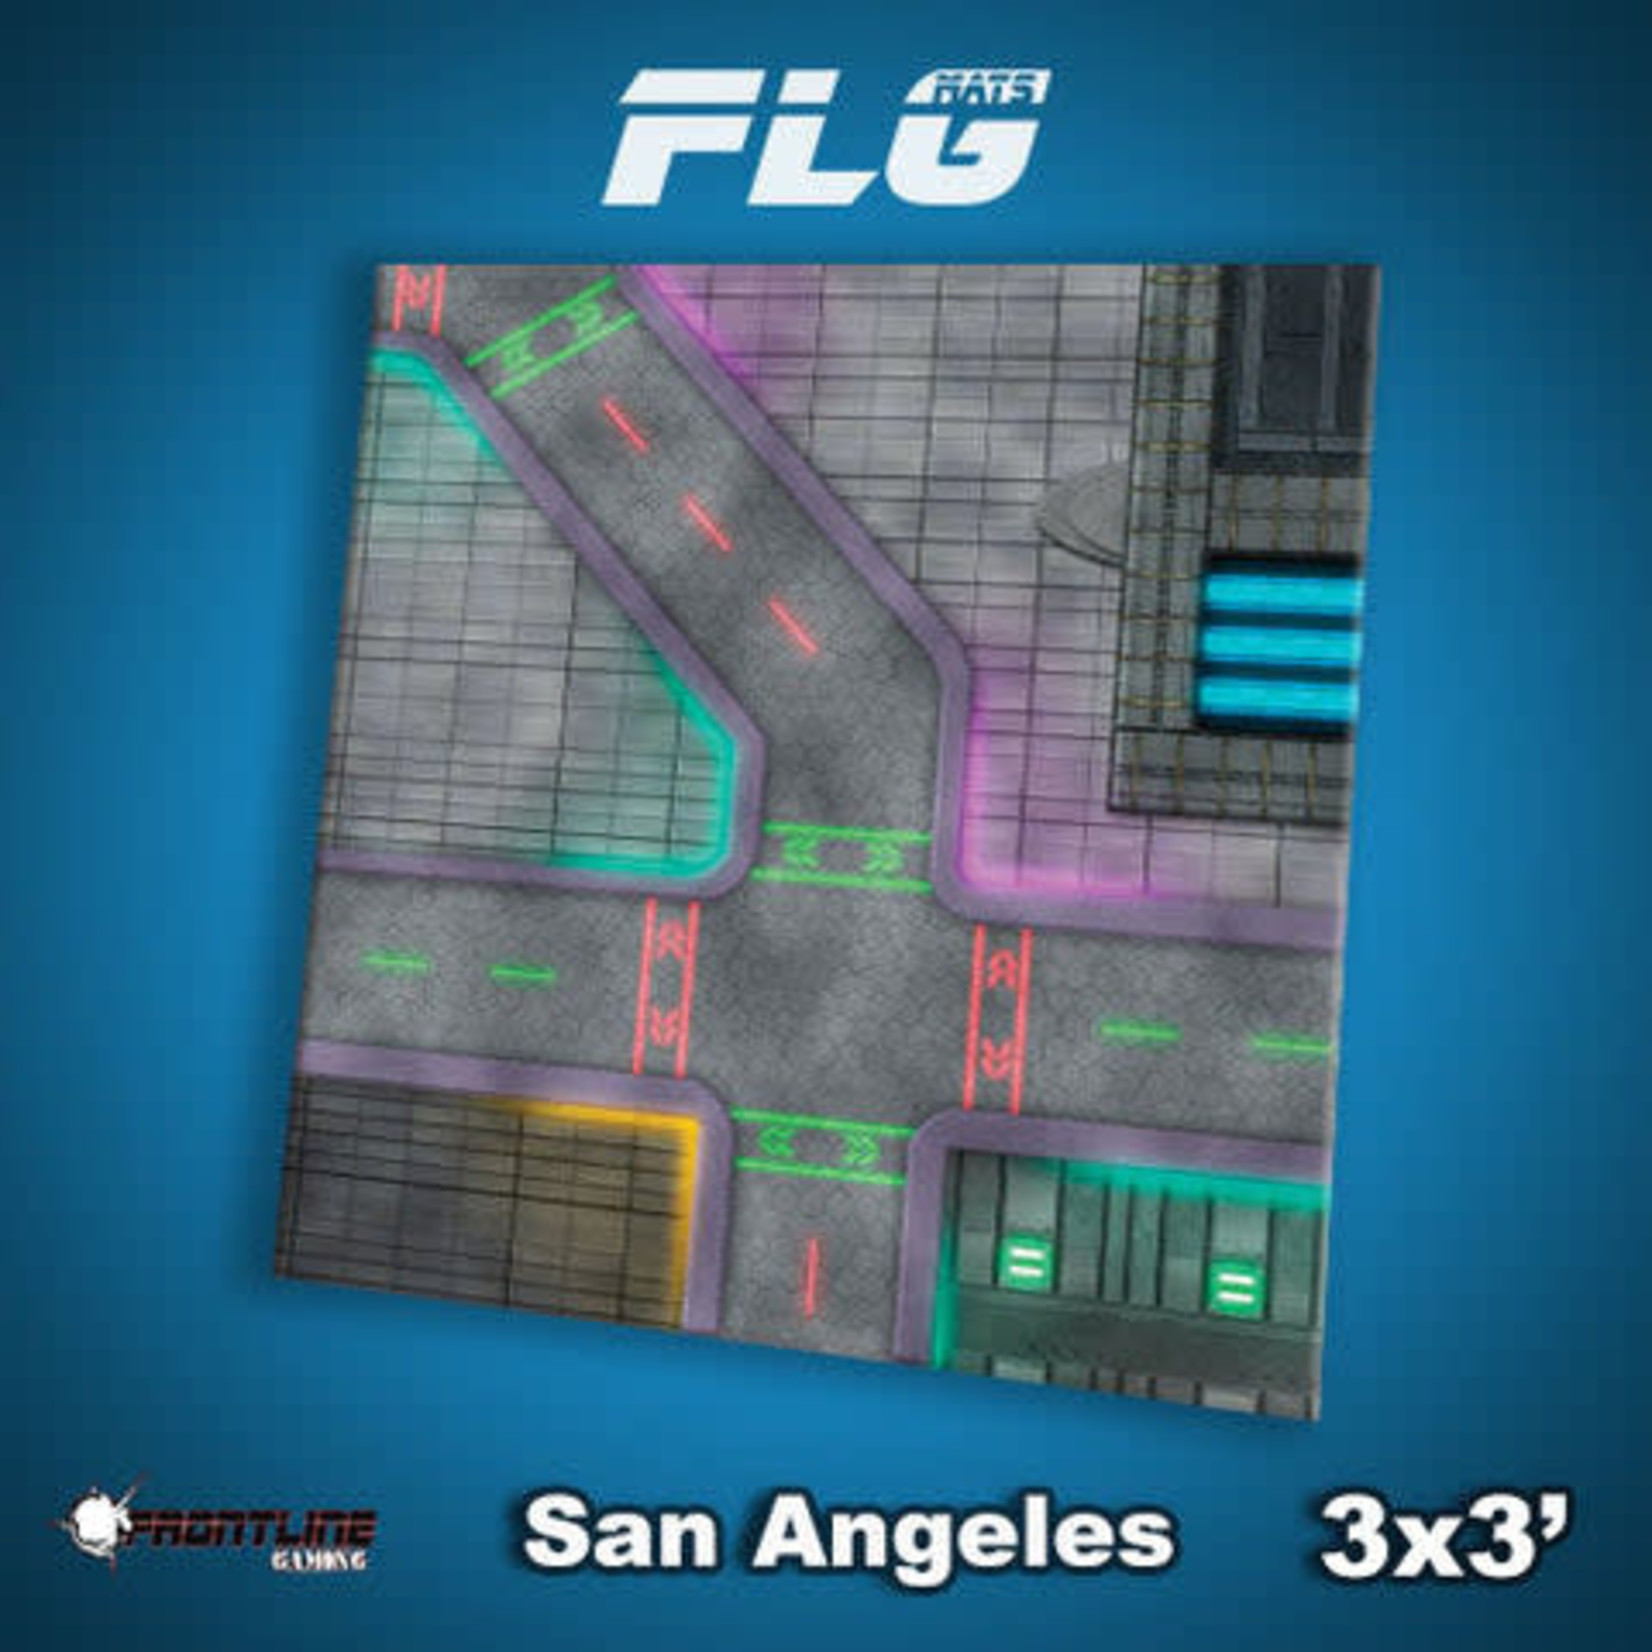 Frontline Gaming FLG Mat - San Angeles